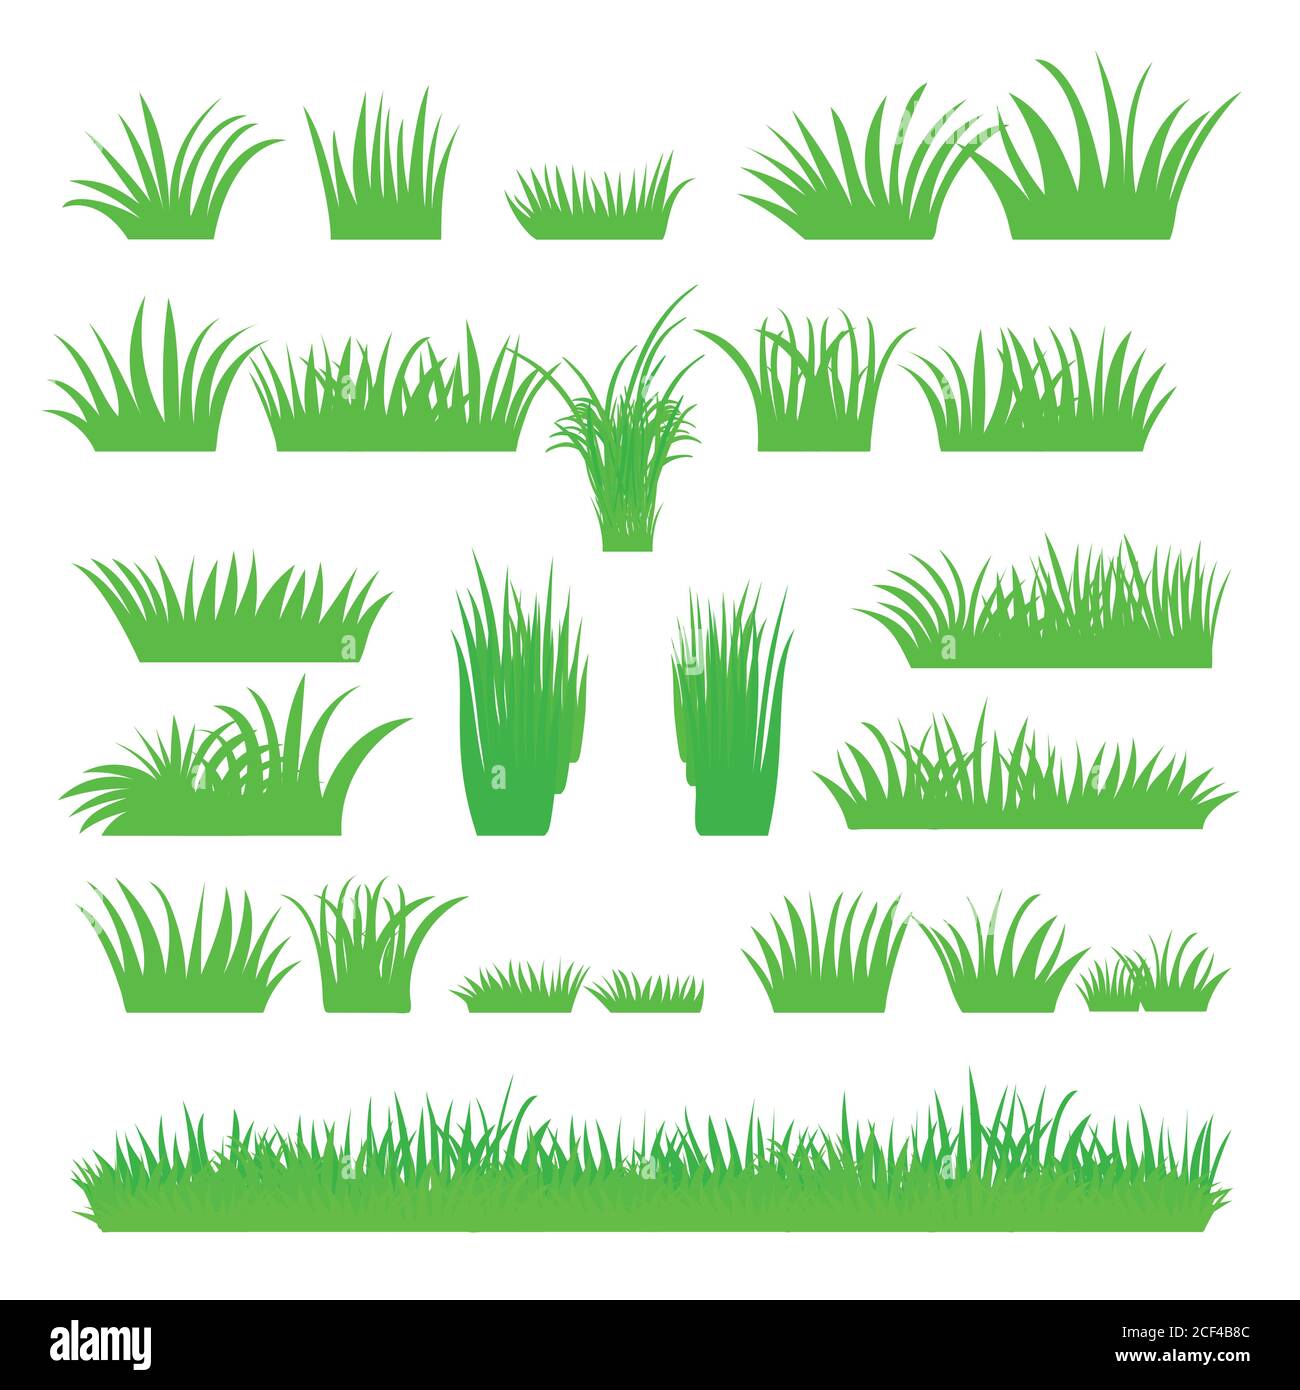 Ensemble d'herbe verte abstraite et plate Vector isolé sur fond blanc. Kit pour herbes fraîches de printemps. Touffes de feuilles d'herbe. Un ensemble d'éléments de conception de natu Illustration de Vecteur